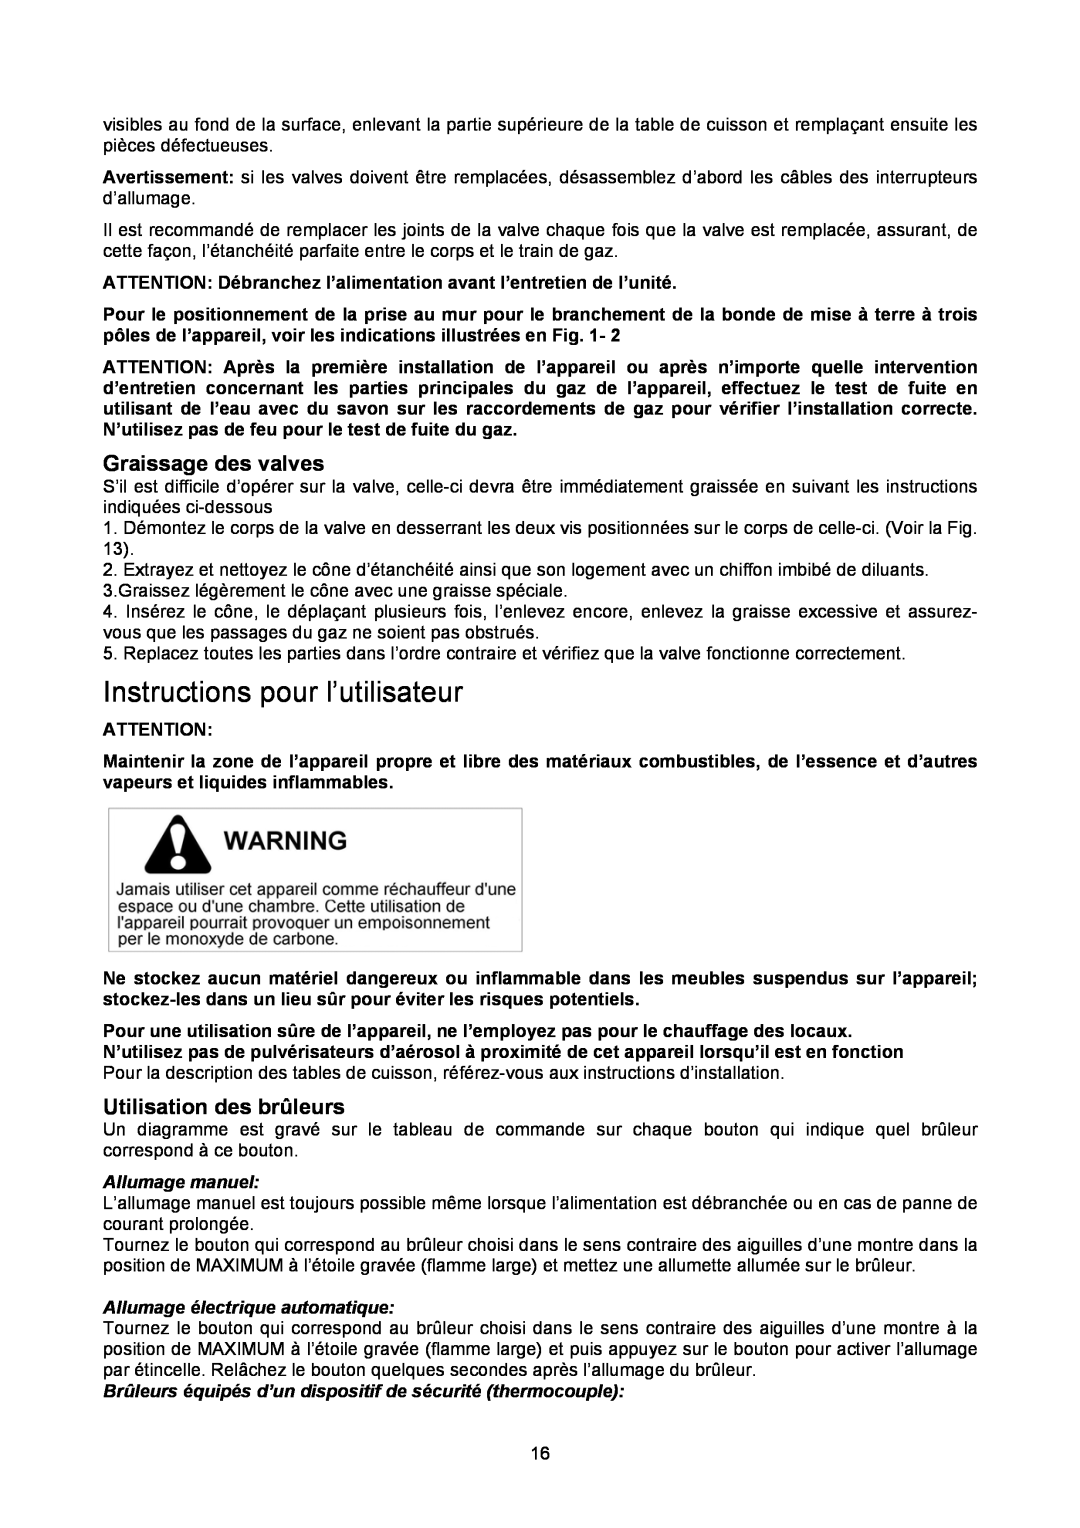 Bertazzoni B3Y0..U4X(2 OR 5)D manual Instructions pour l’utilisateur, Graissage des valves, Utilisation des brûleurs 